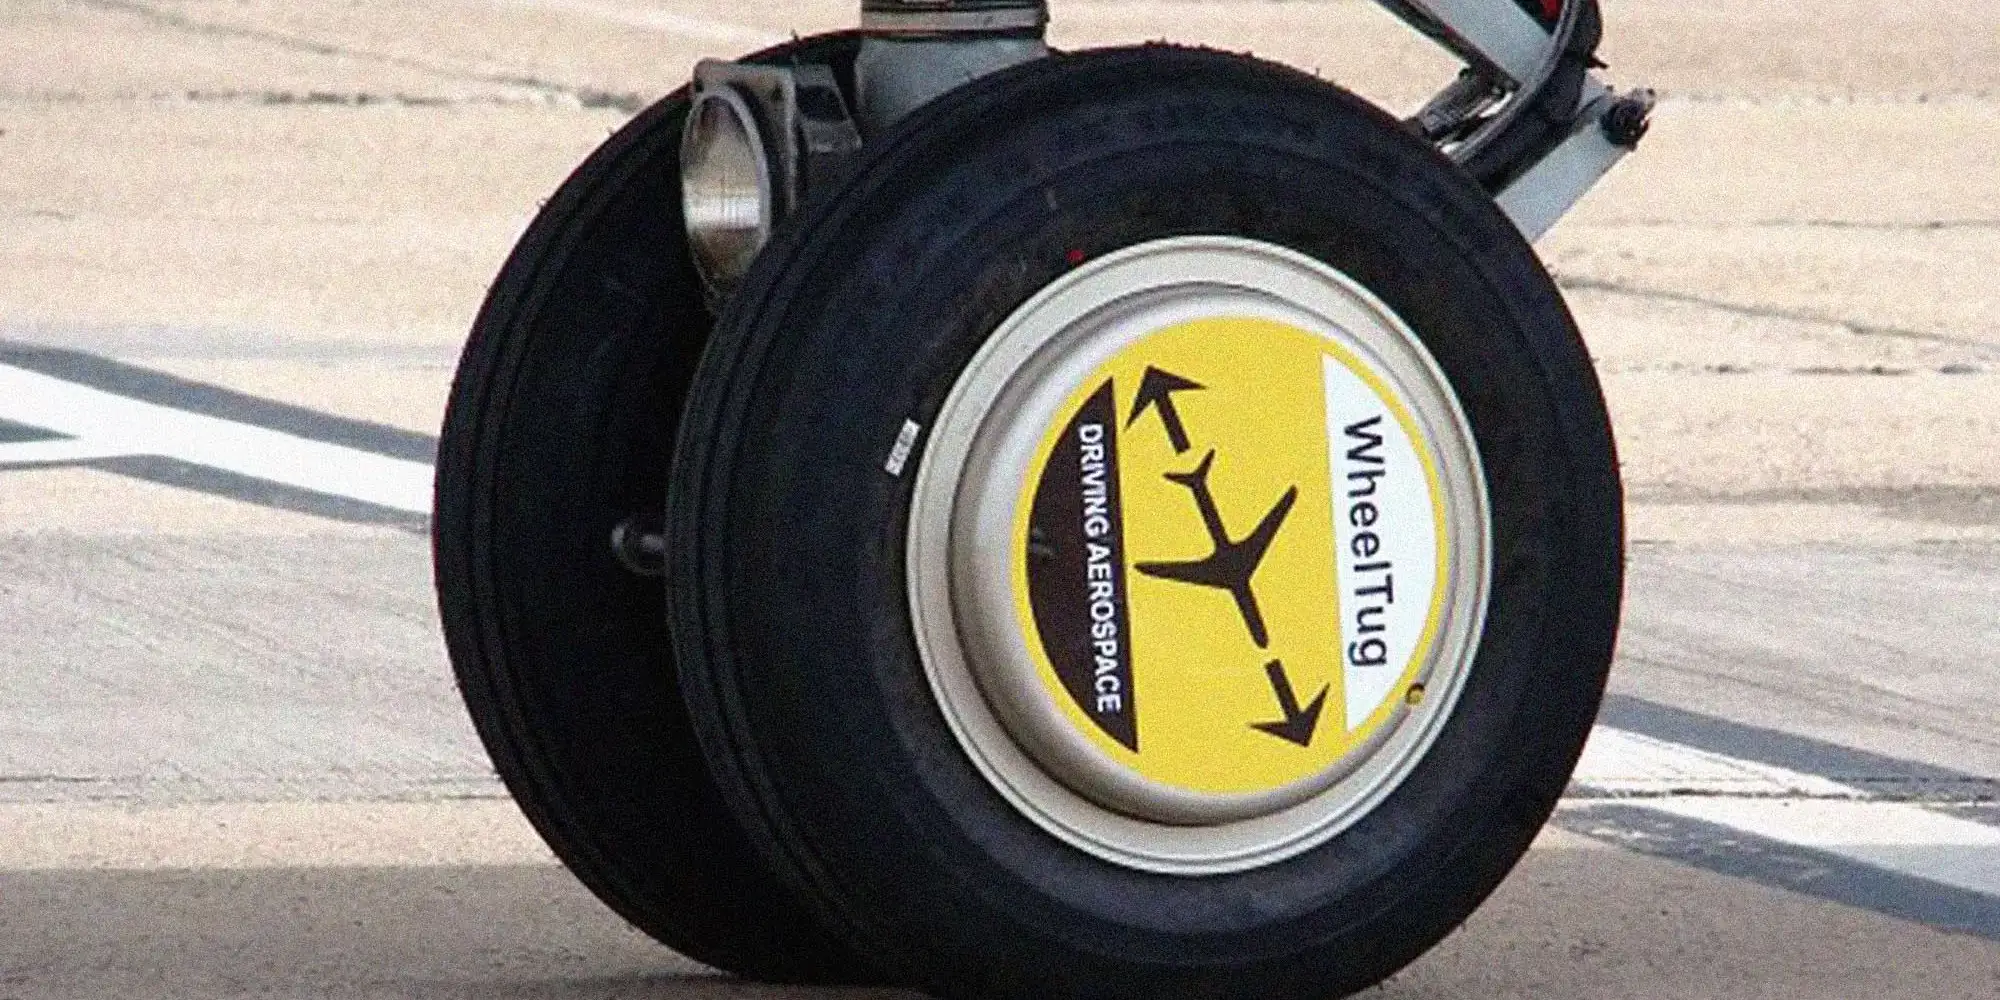 WheelTug Taxiing System